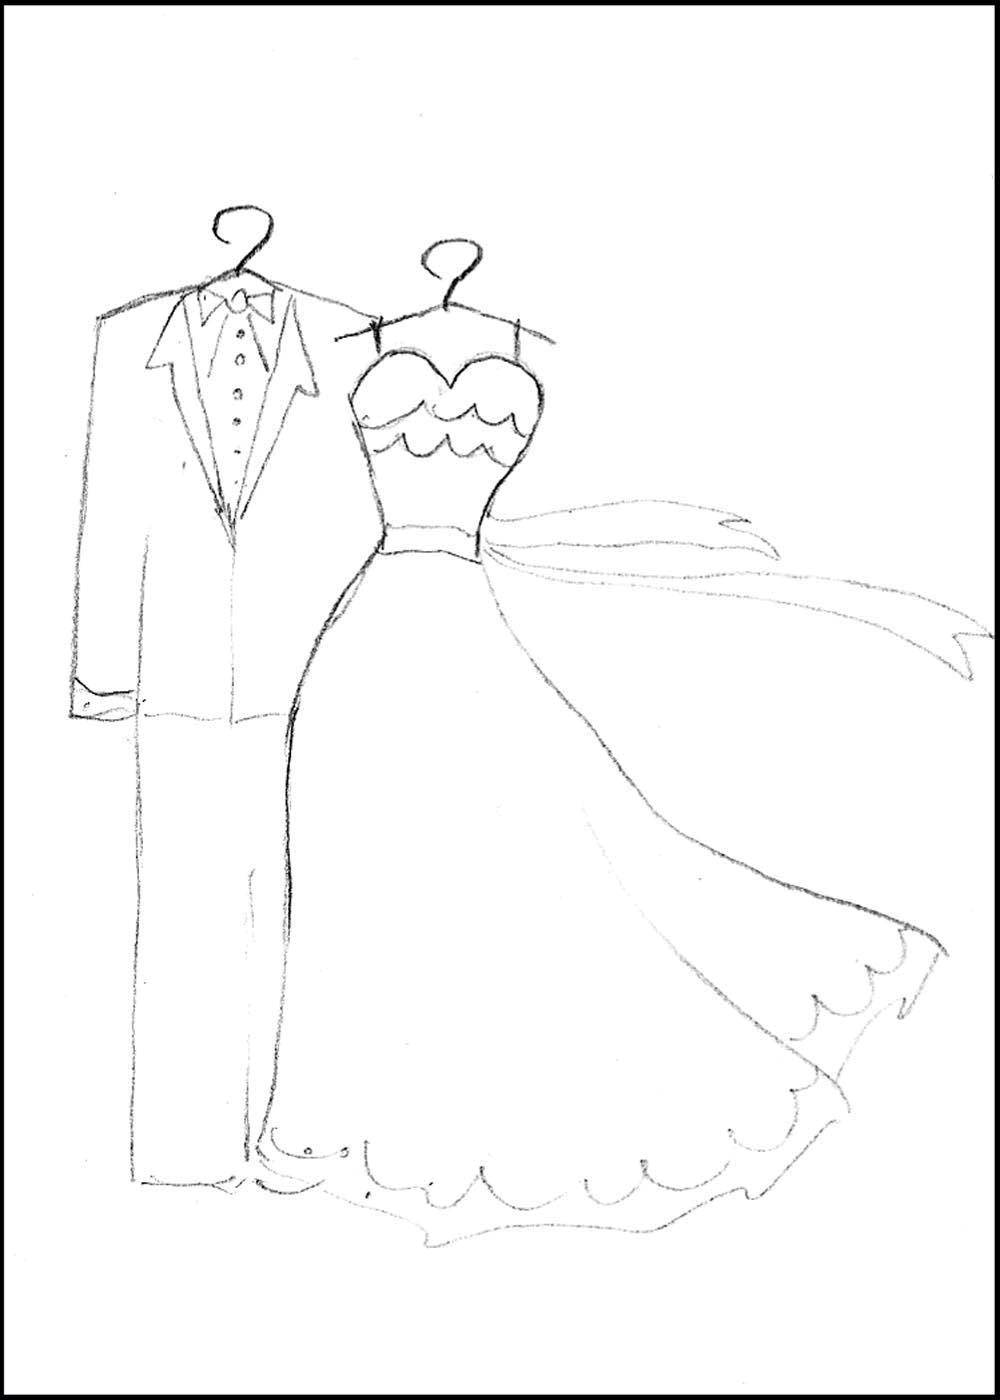 Название: Раскраска Свадебное платье. Категория: свадебные платья. Теги: свадьба, платье.